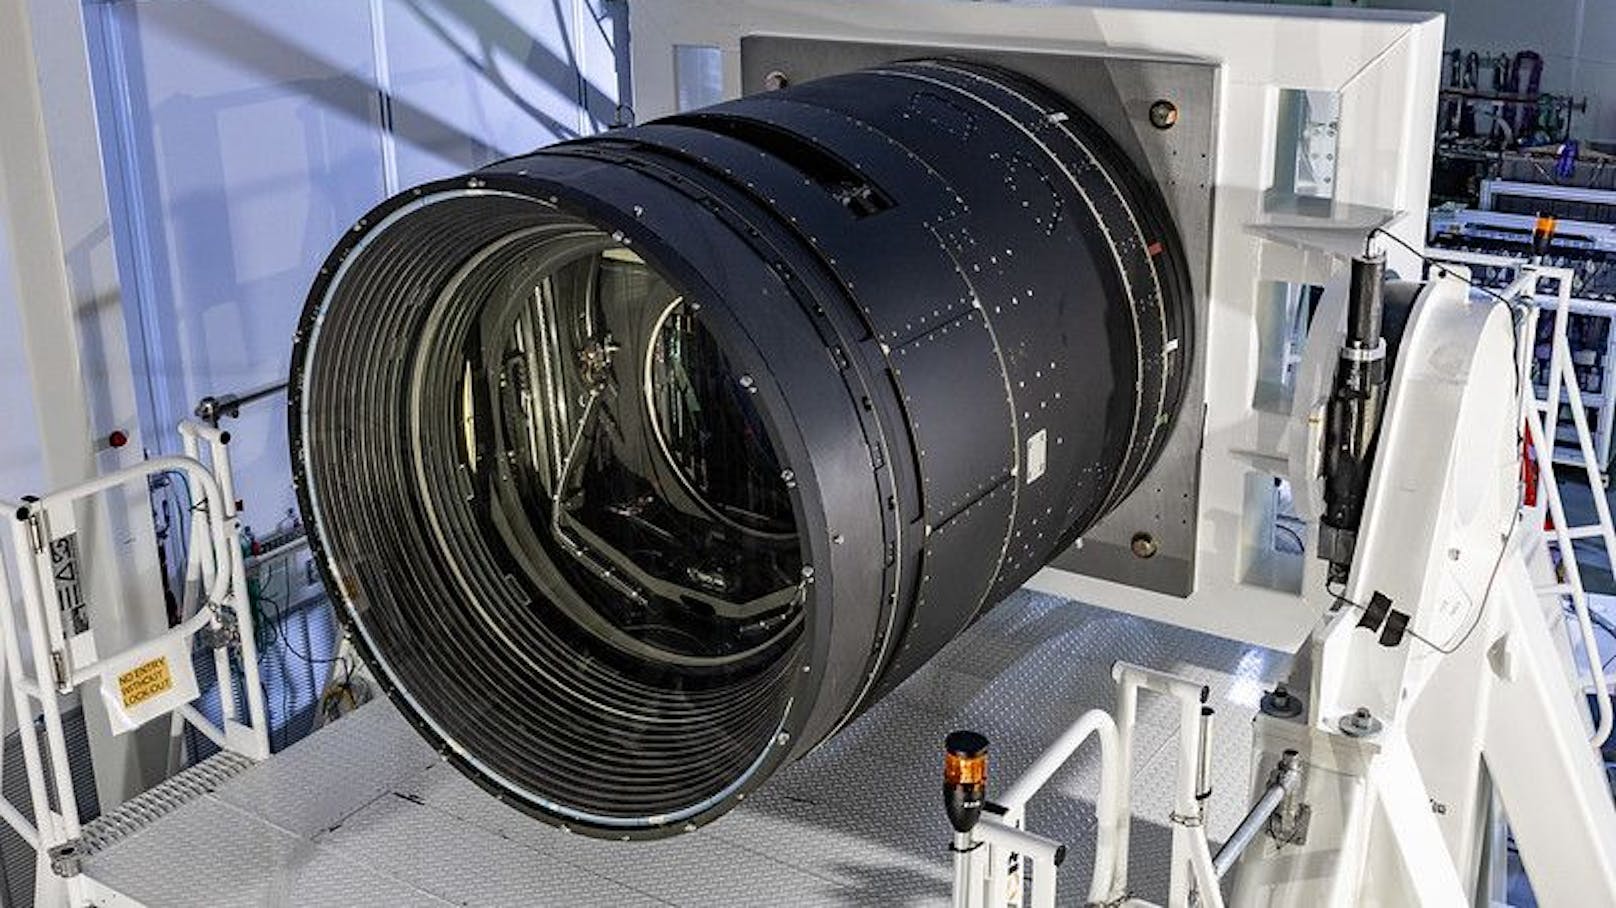 Sie ist die größte jemals für die Astronomie gebaute Digitalkamera. Mit 700 Millionen US-Dollar&nbsp;ist sie vermutlich auch die teuerste Kamera der Welt. Die Kamera hat in etwa die Größe eines Kleinwagens und wiegt rund 3.000 Kilogramm, ihre Frontlinse hat einen Durchmesser von 1,60 Meter – die größte Linse, die je für diesen Zweck gebaut wurde.